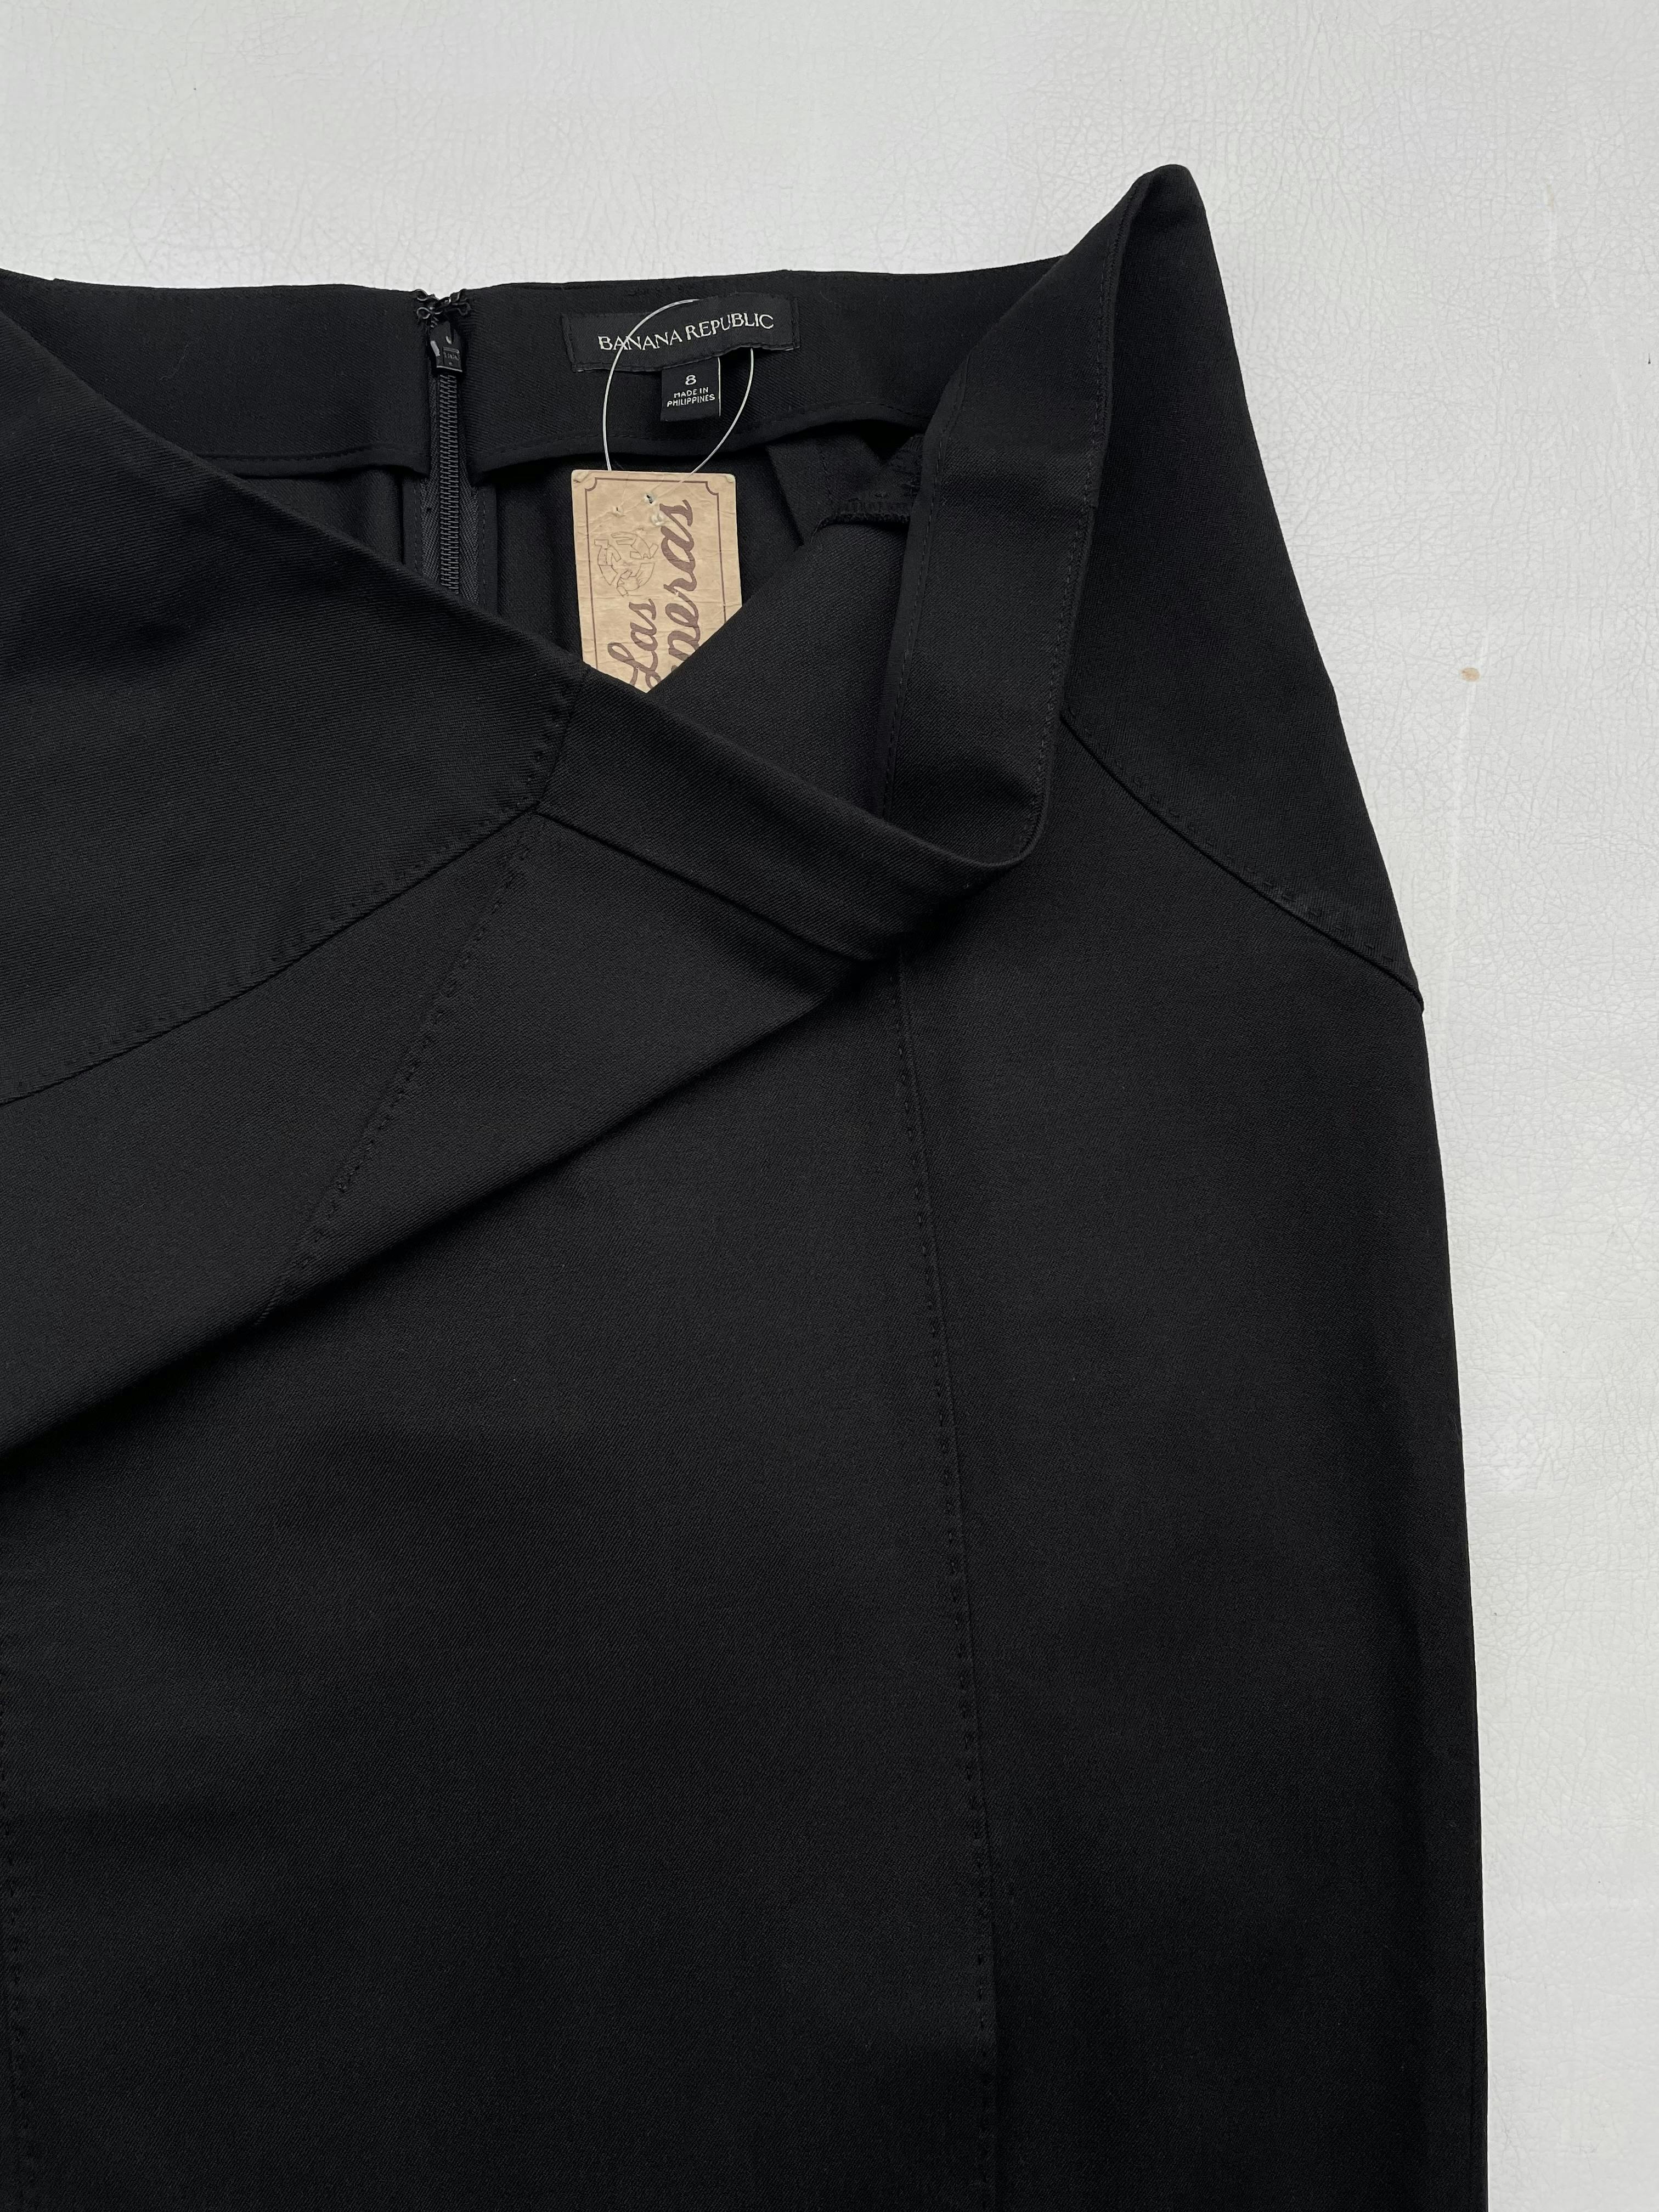 Falda formal Banana Republic negra mezcla de algodón ligeramente stretch, costuras y pespuntes al tono, abertura delantera en la basta y cierre posterior. Cintura 80cm Largo 60cm